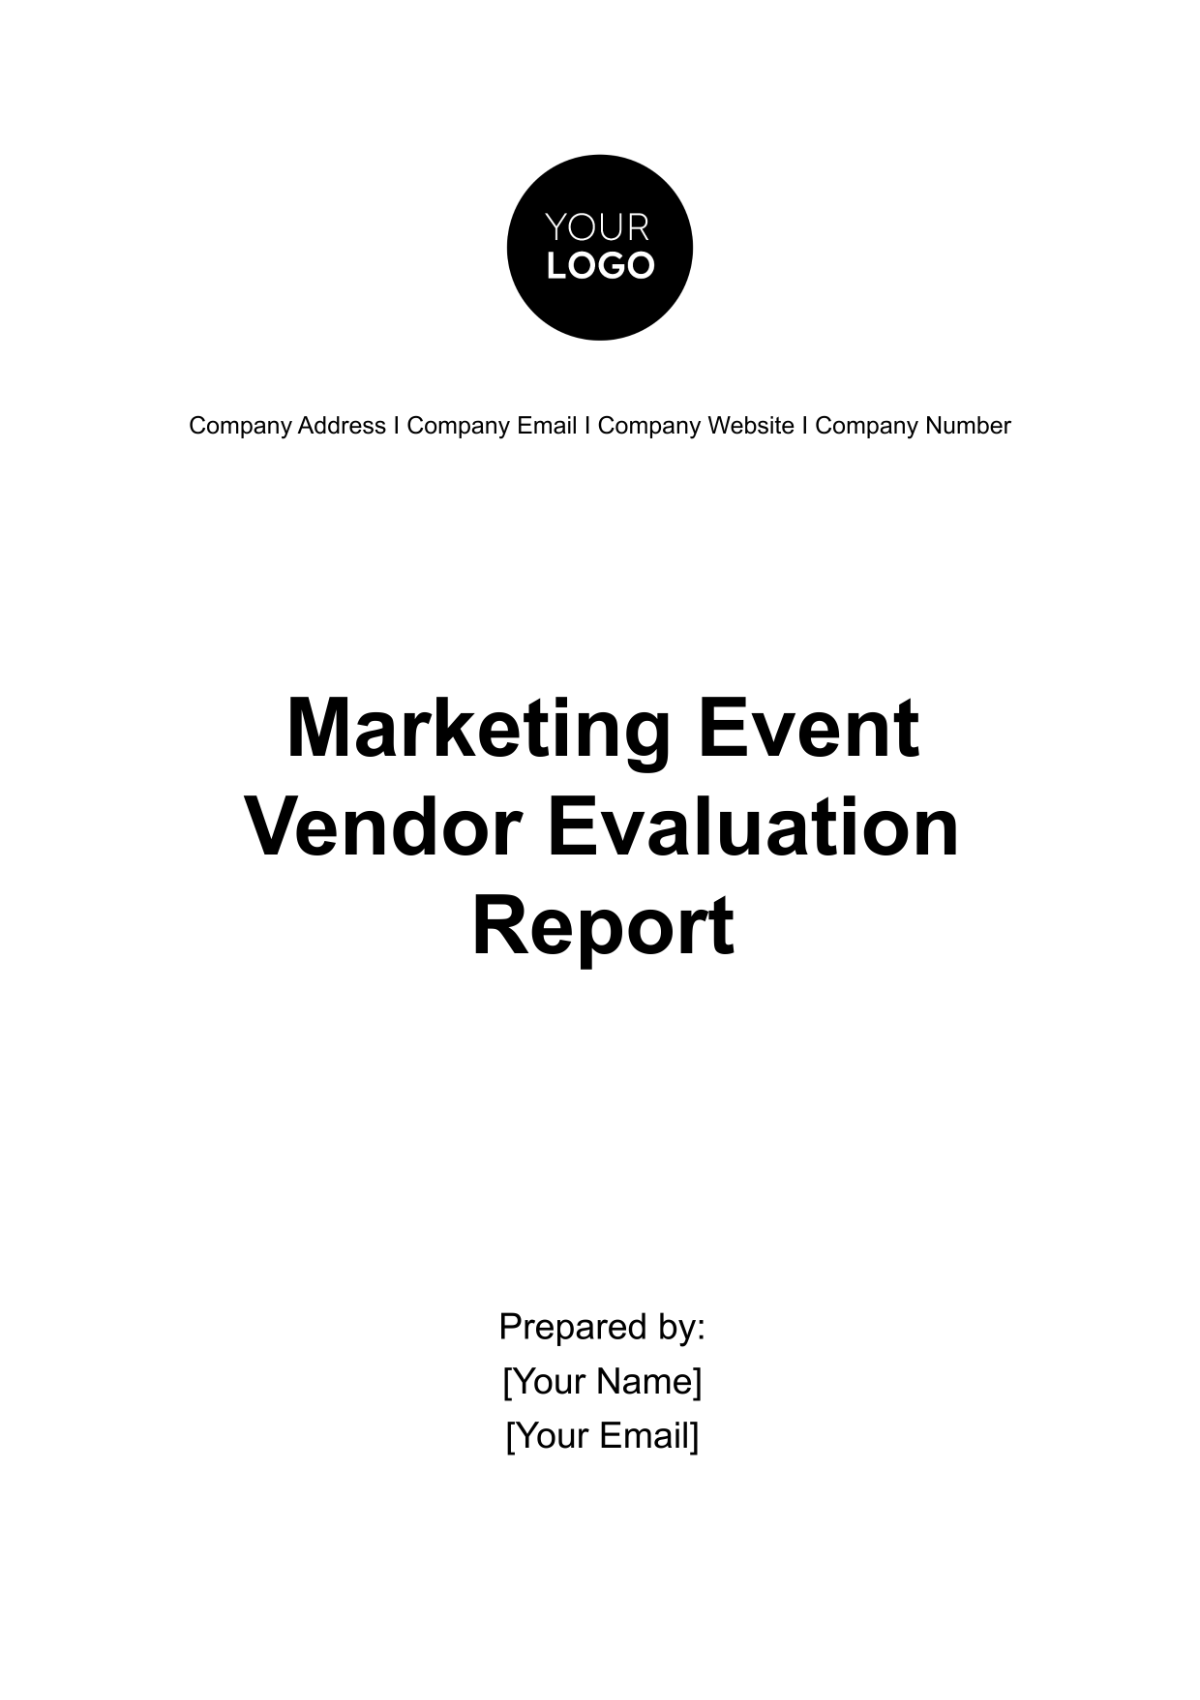 Free Marketing Event Vendor Evaluation Report Template